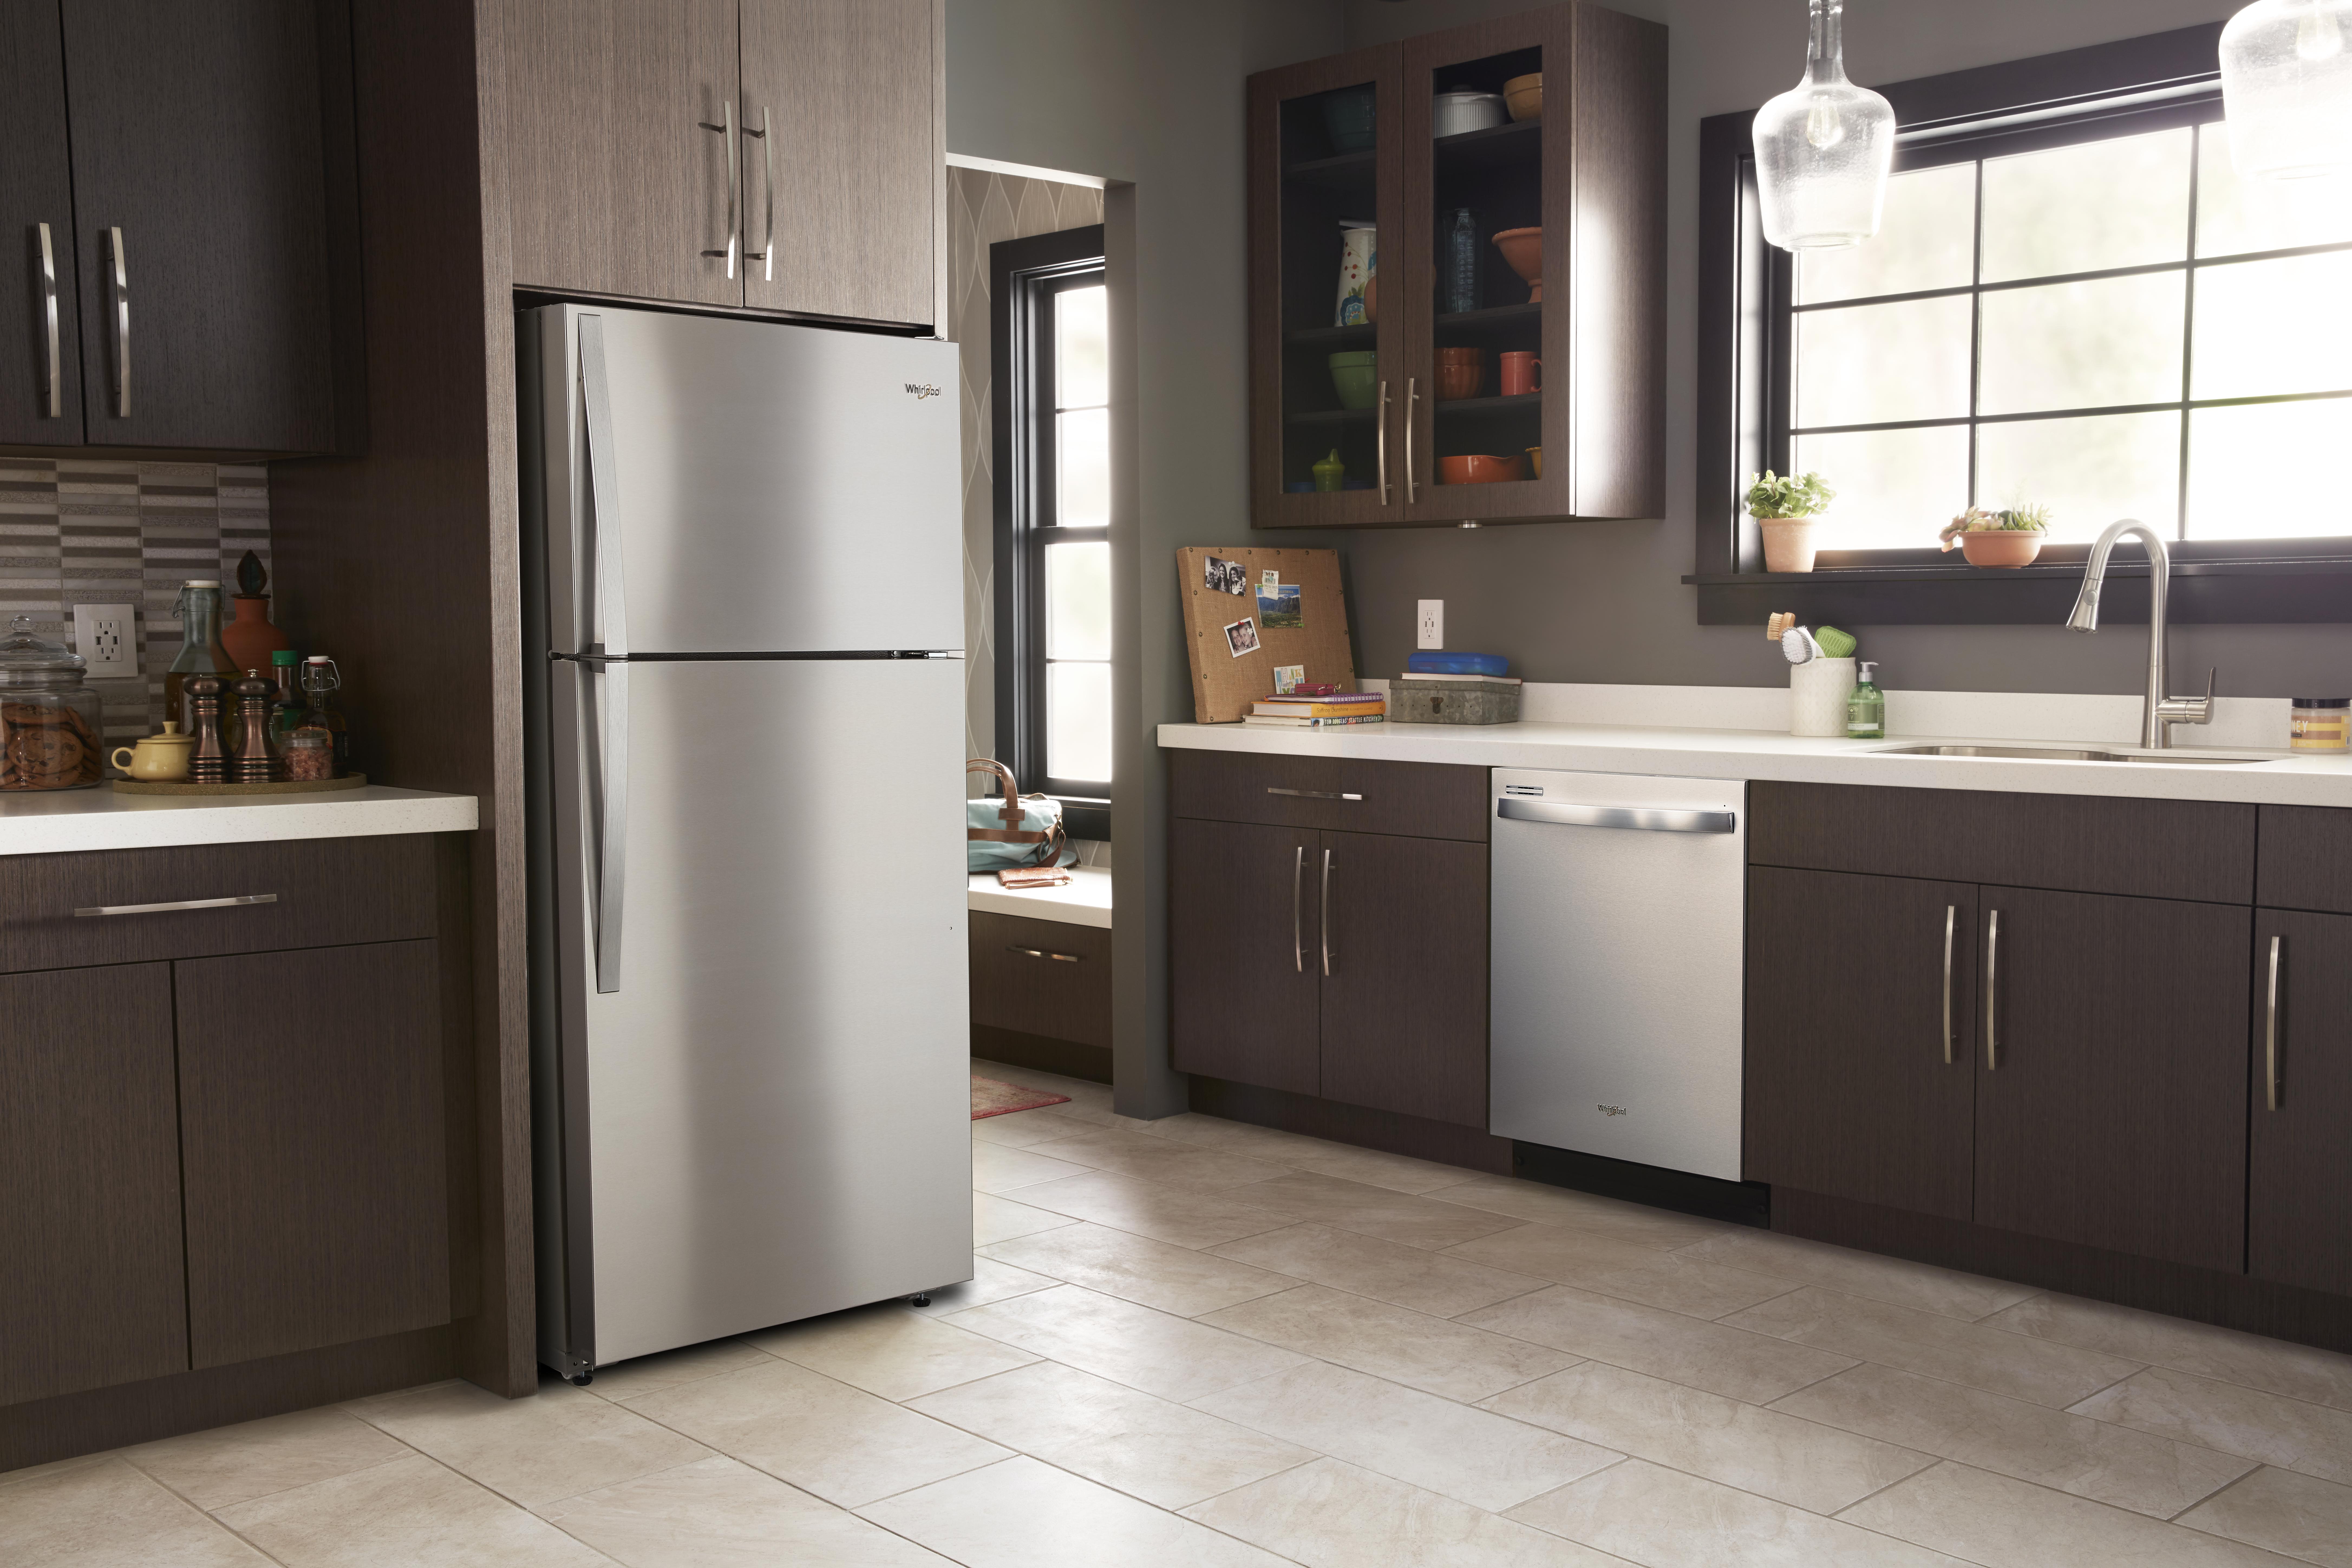 lone standard-depth Whirlpool fridge in clean, empty kitchen